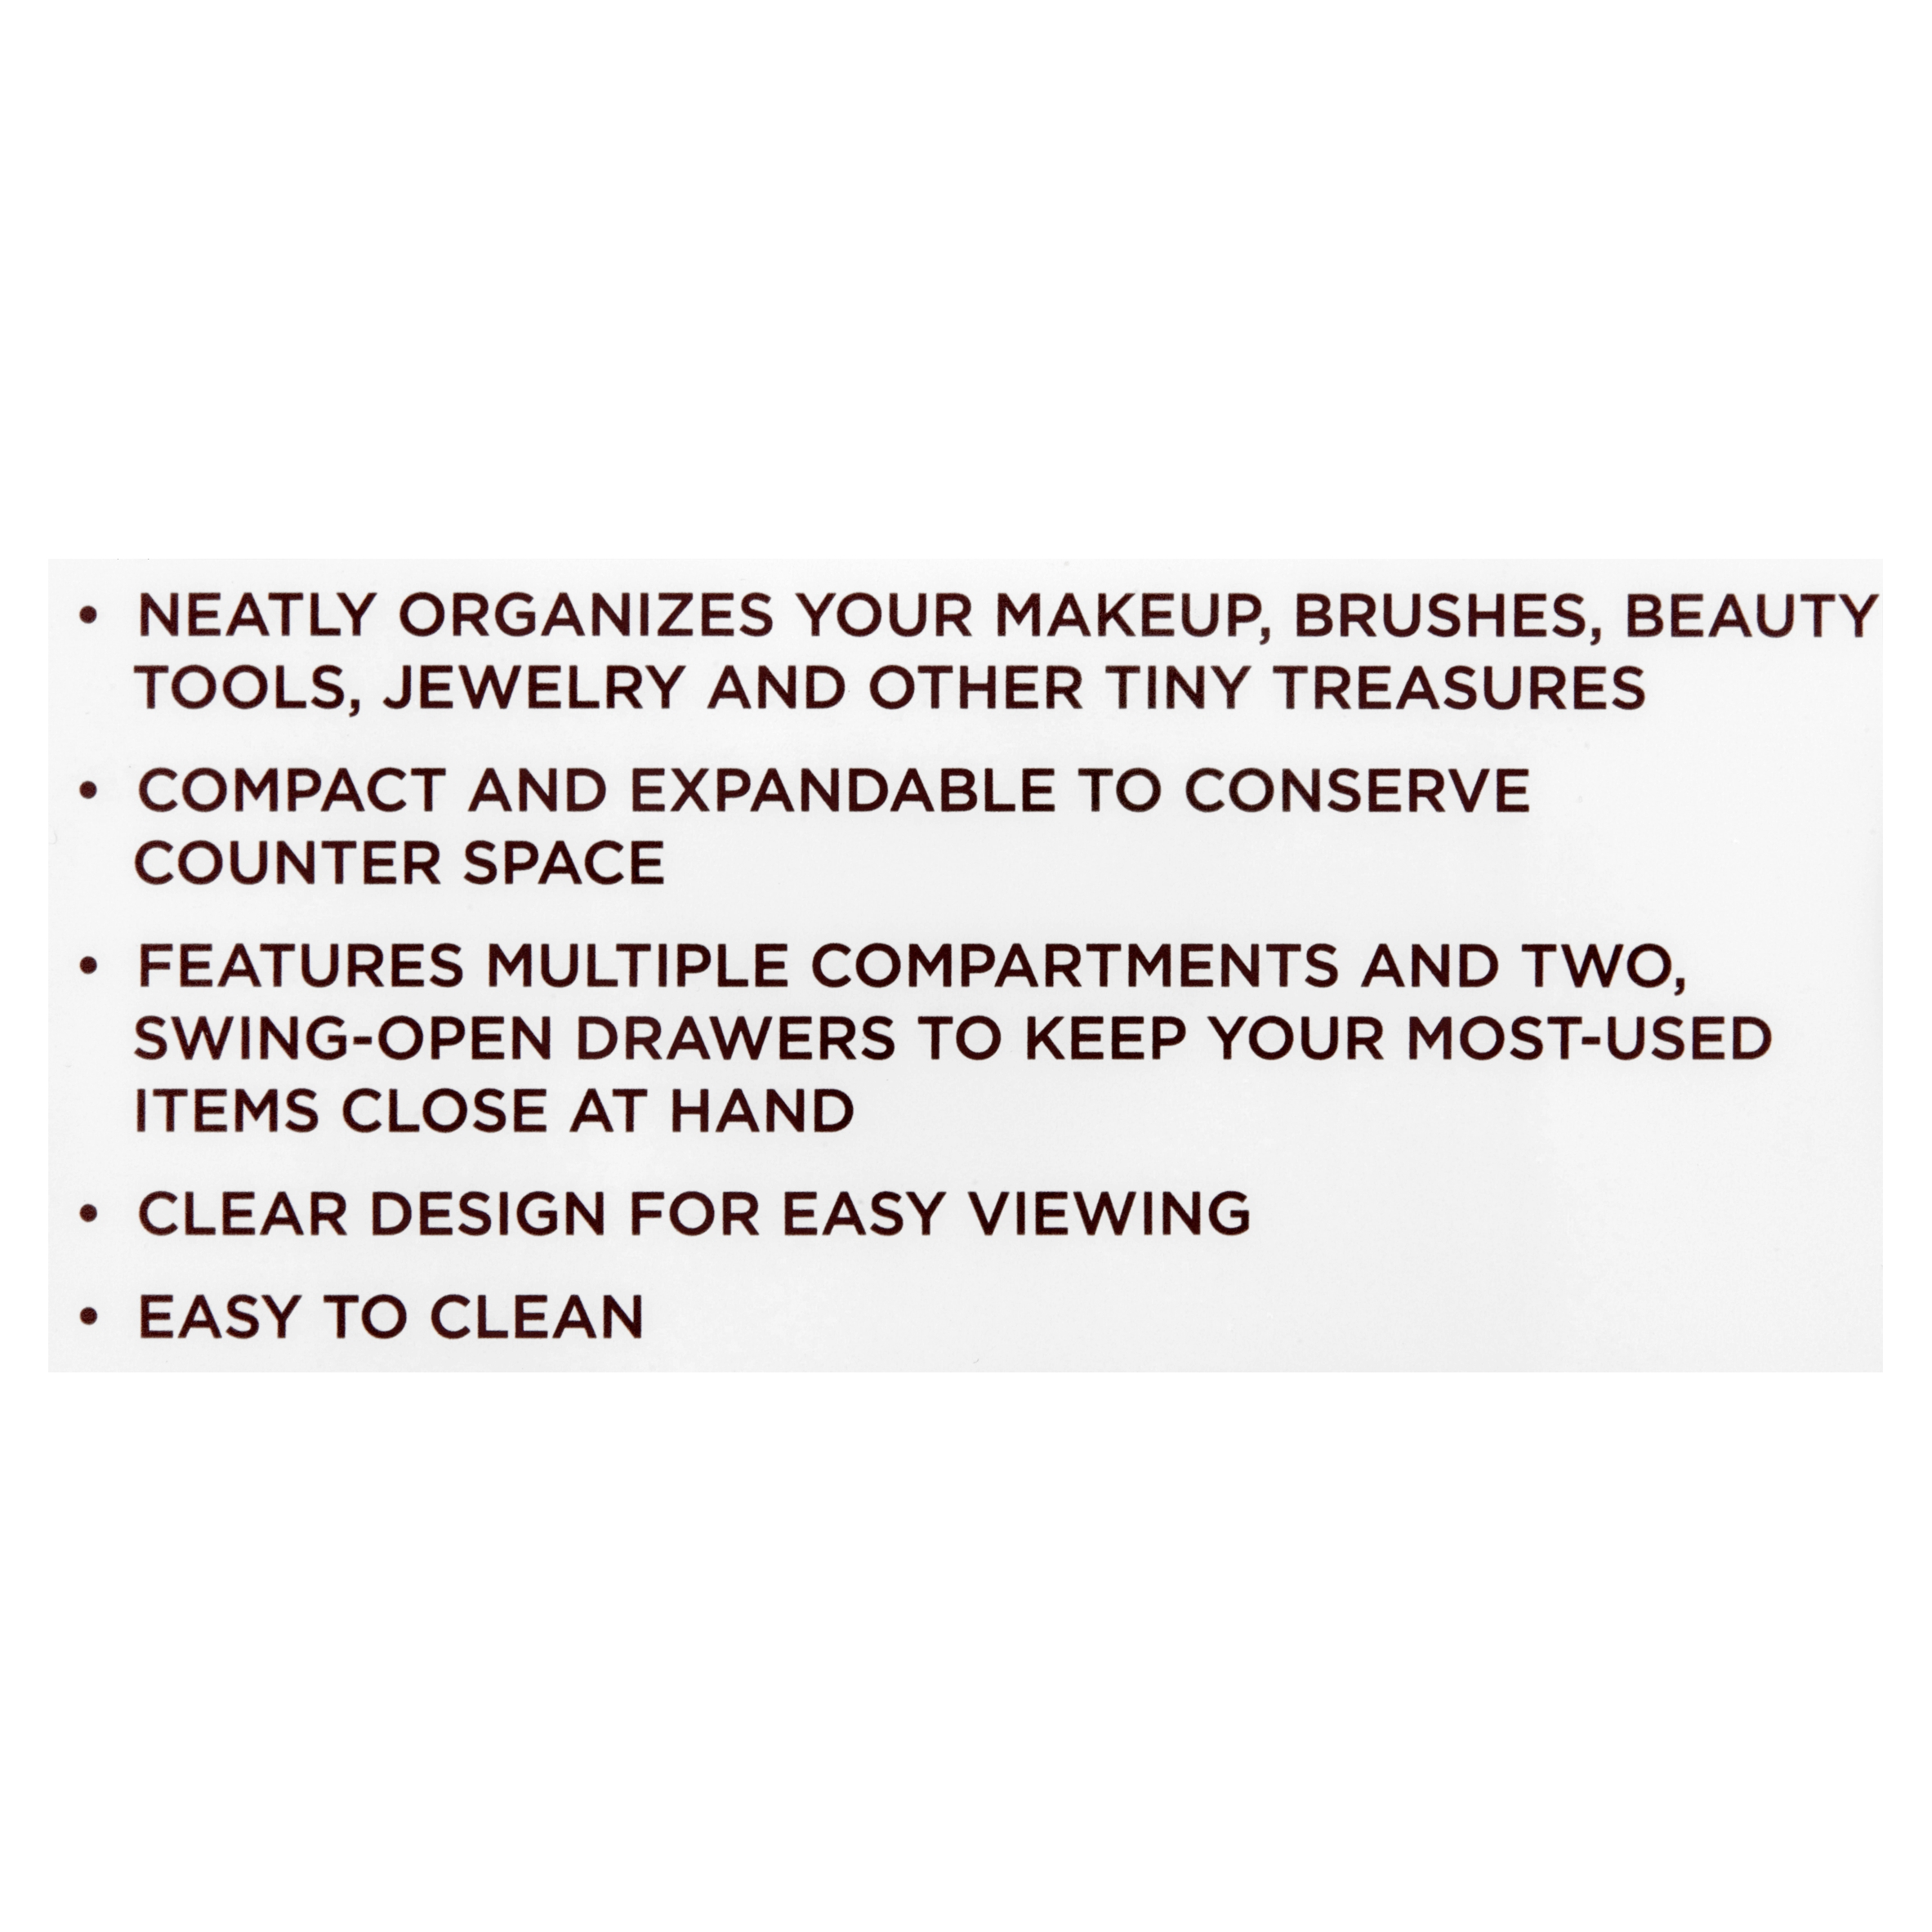 Equate Beauty Brush Organizer - image 4 of 9